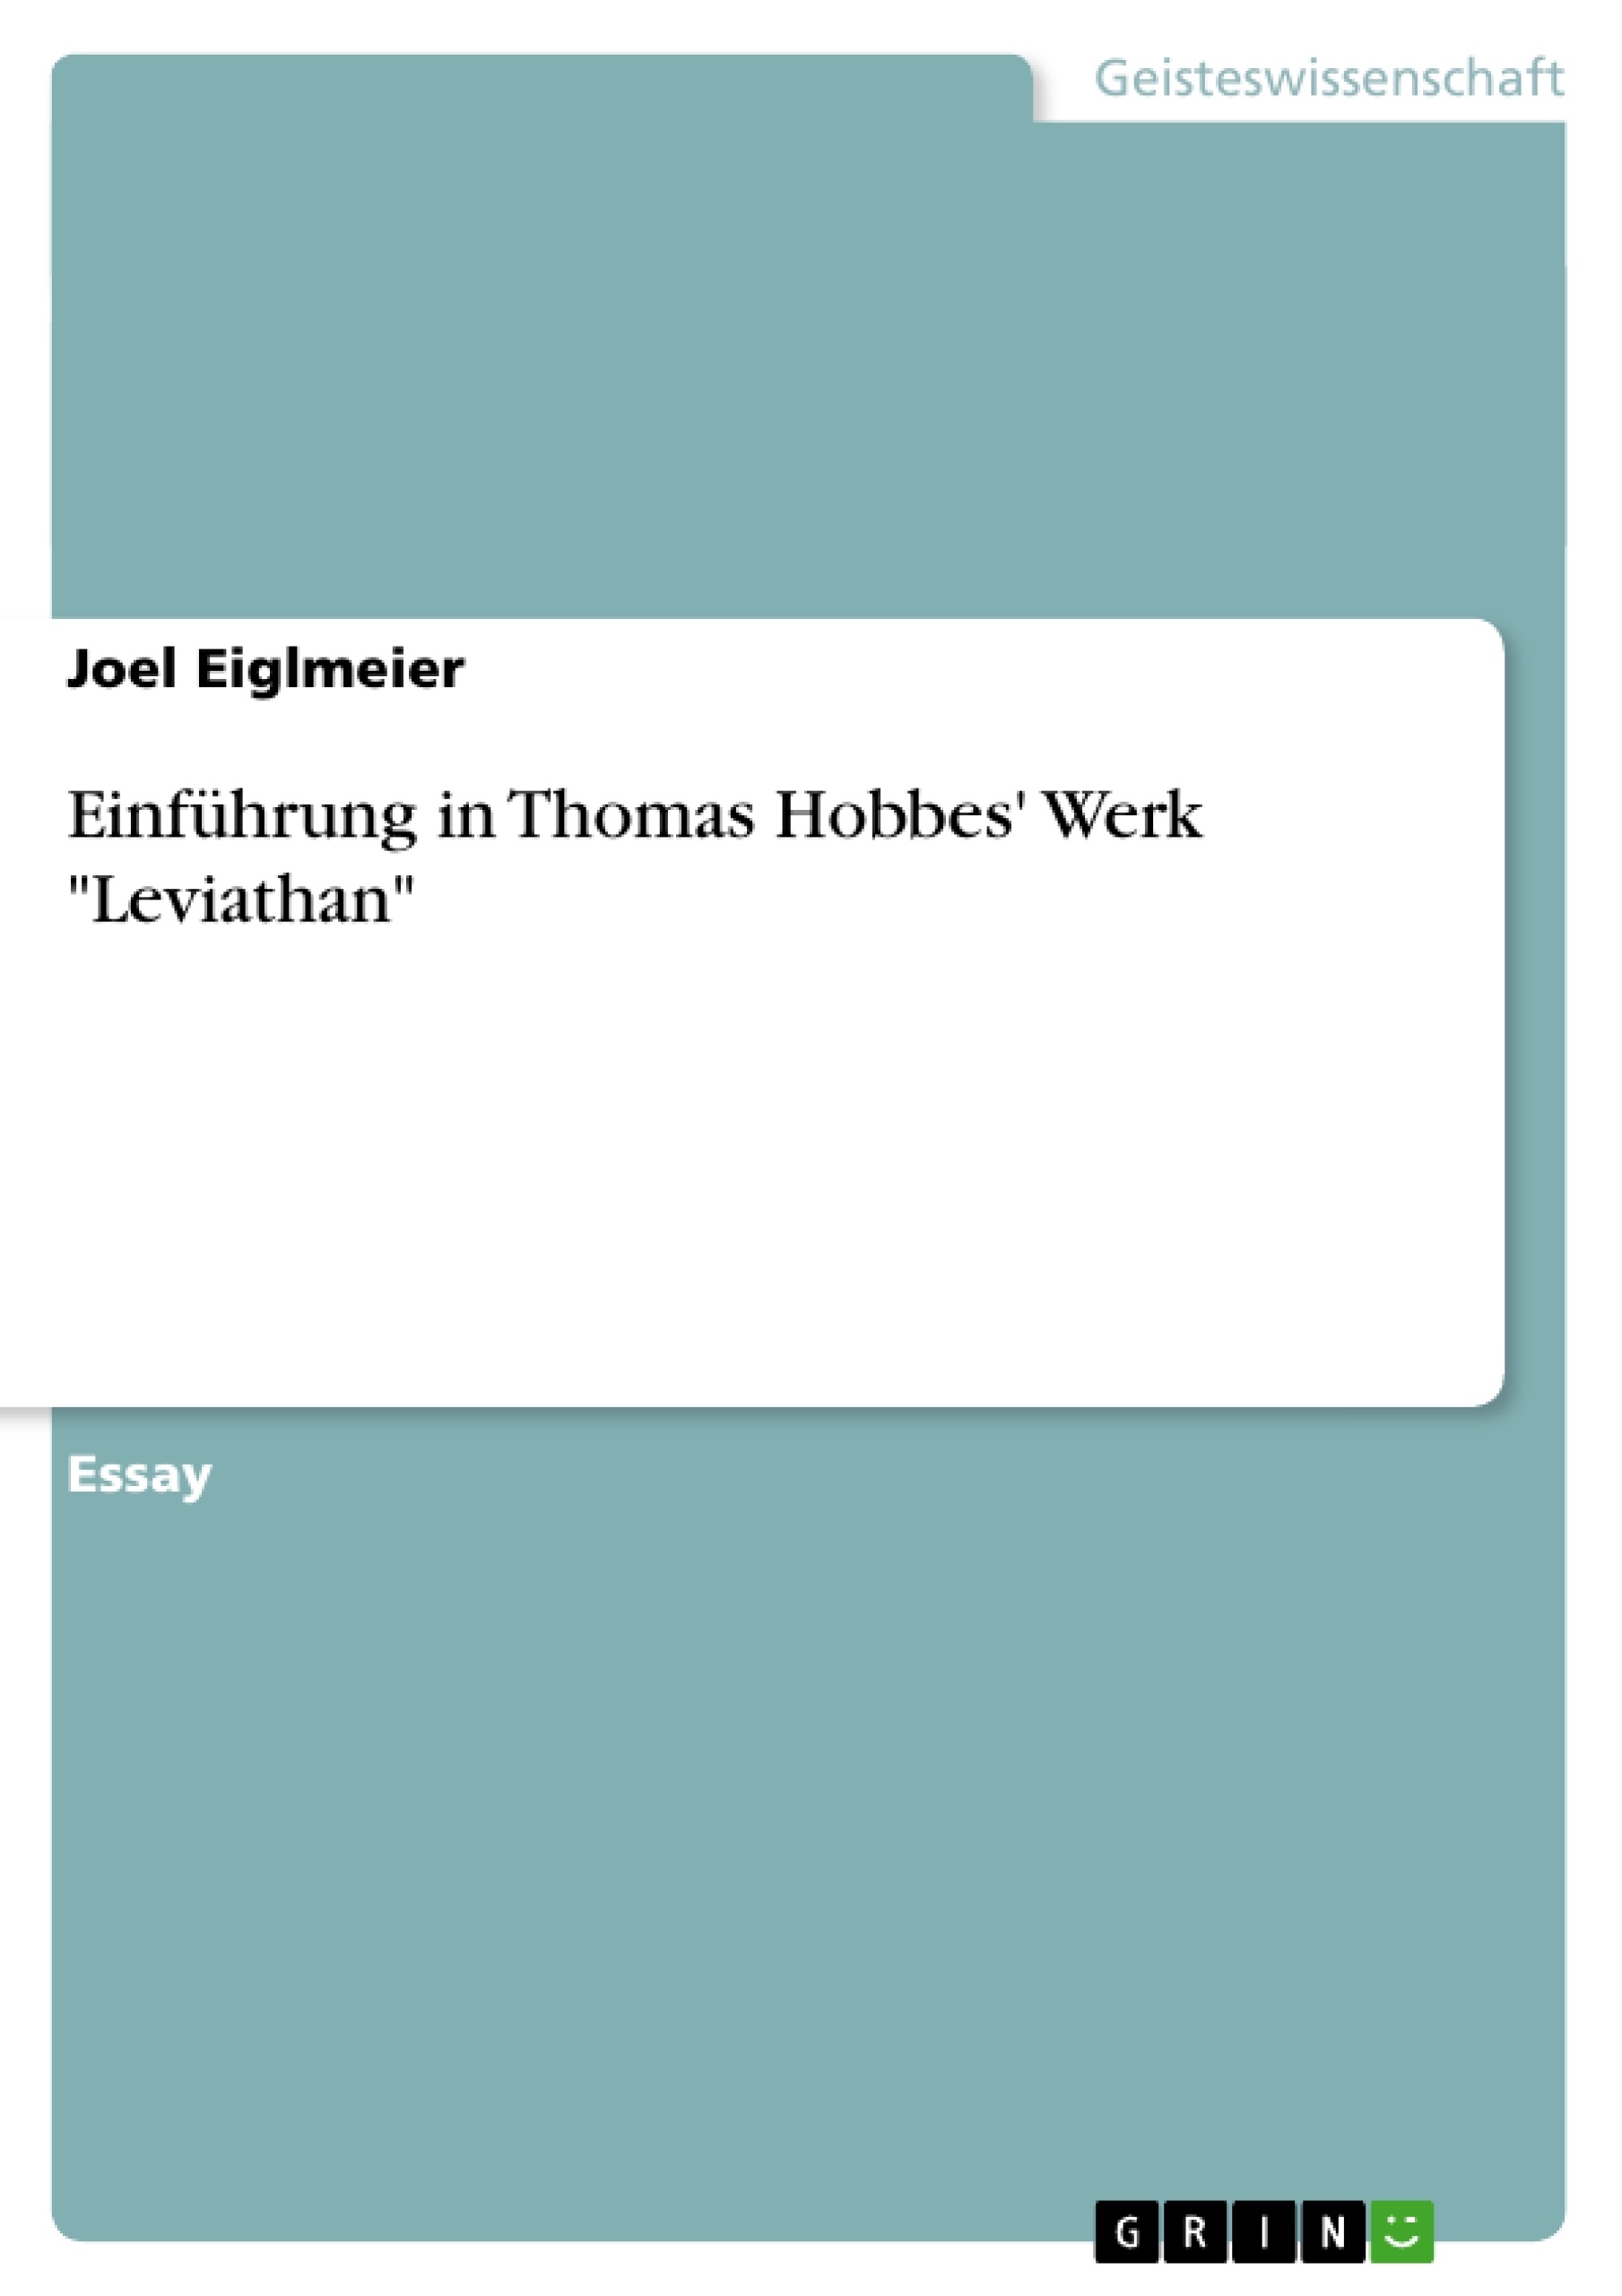 Titre: Einführung in Thomas Hobbes' Werk "Leviathan"